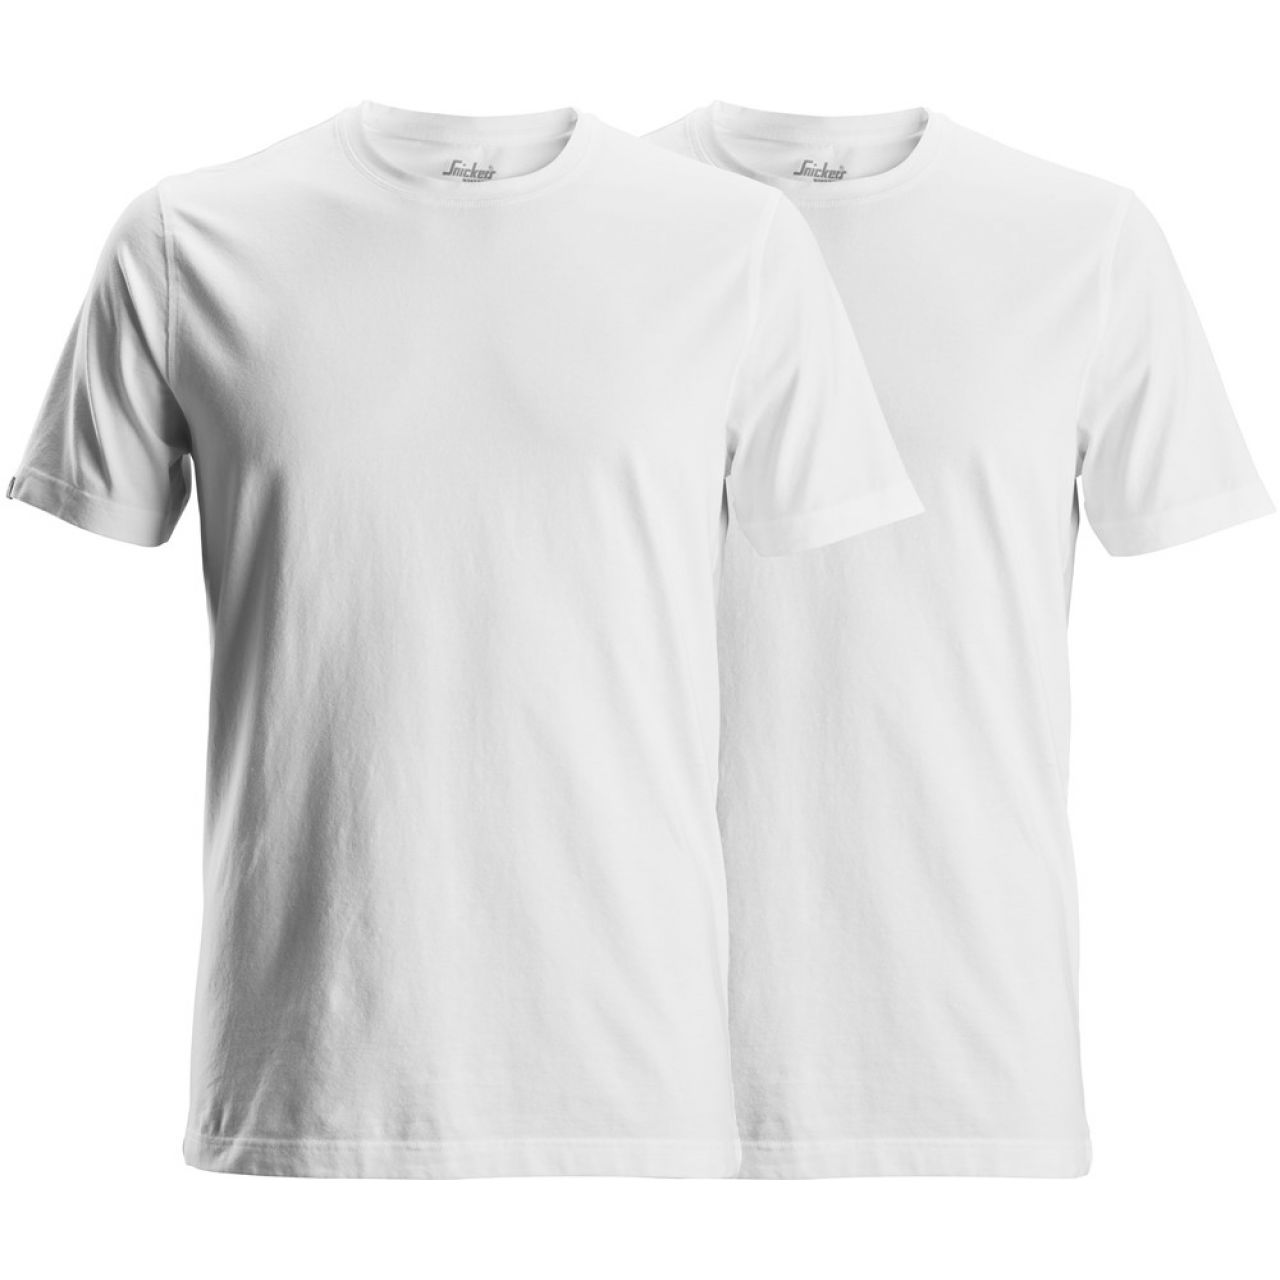 2529 Camisetas de manga corta (pack de 2 unidades) blanco talla 3XL